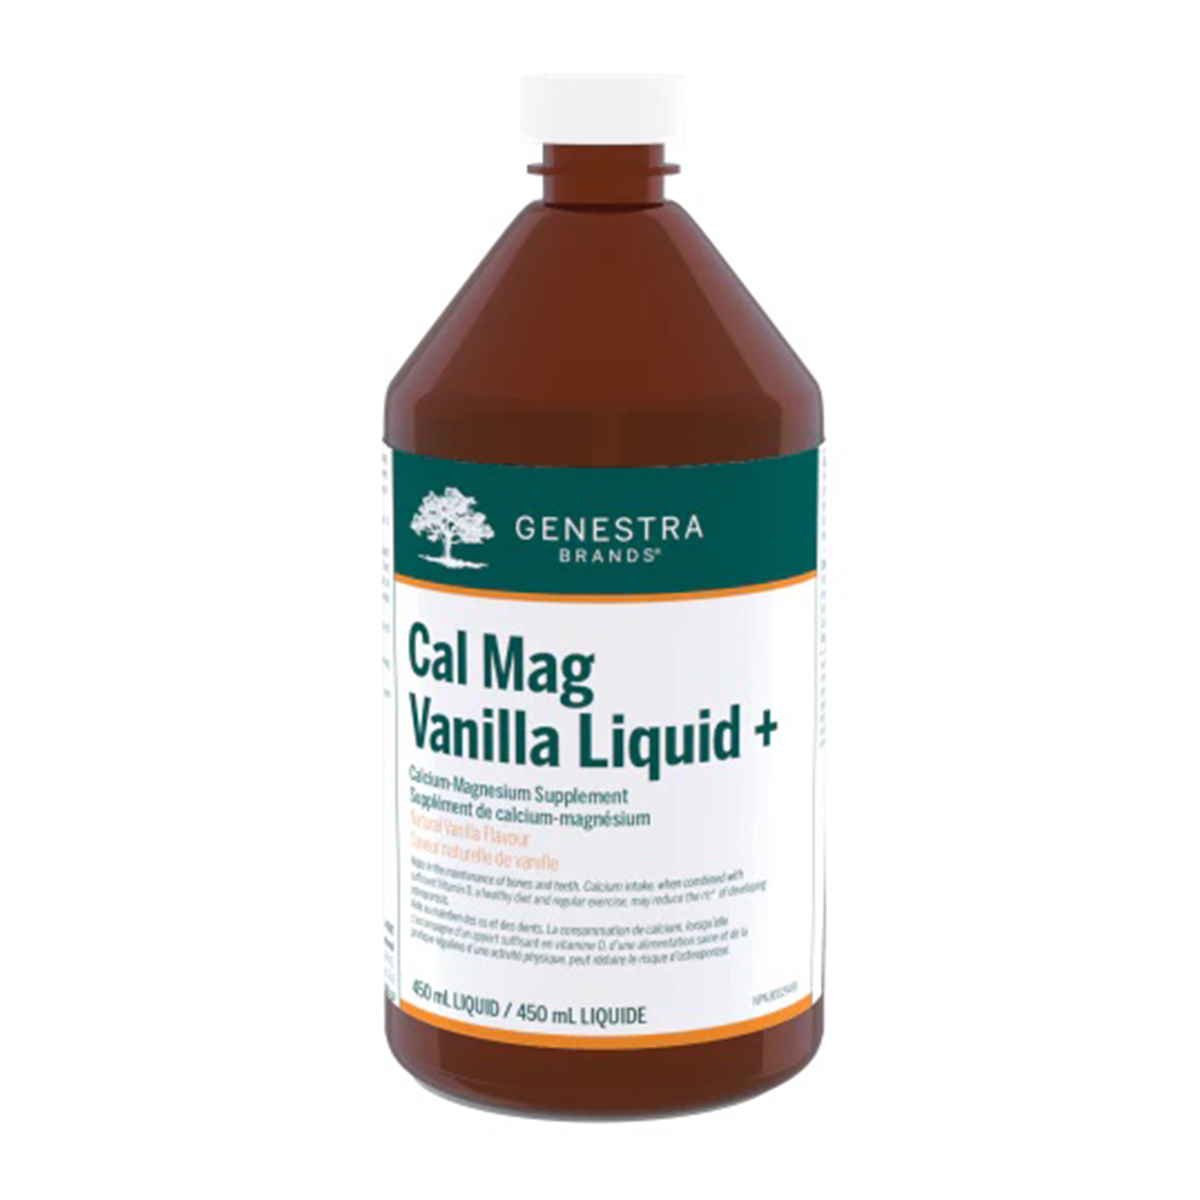 Genestra Cal Mag Vanilla Liquid+